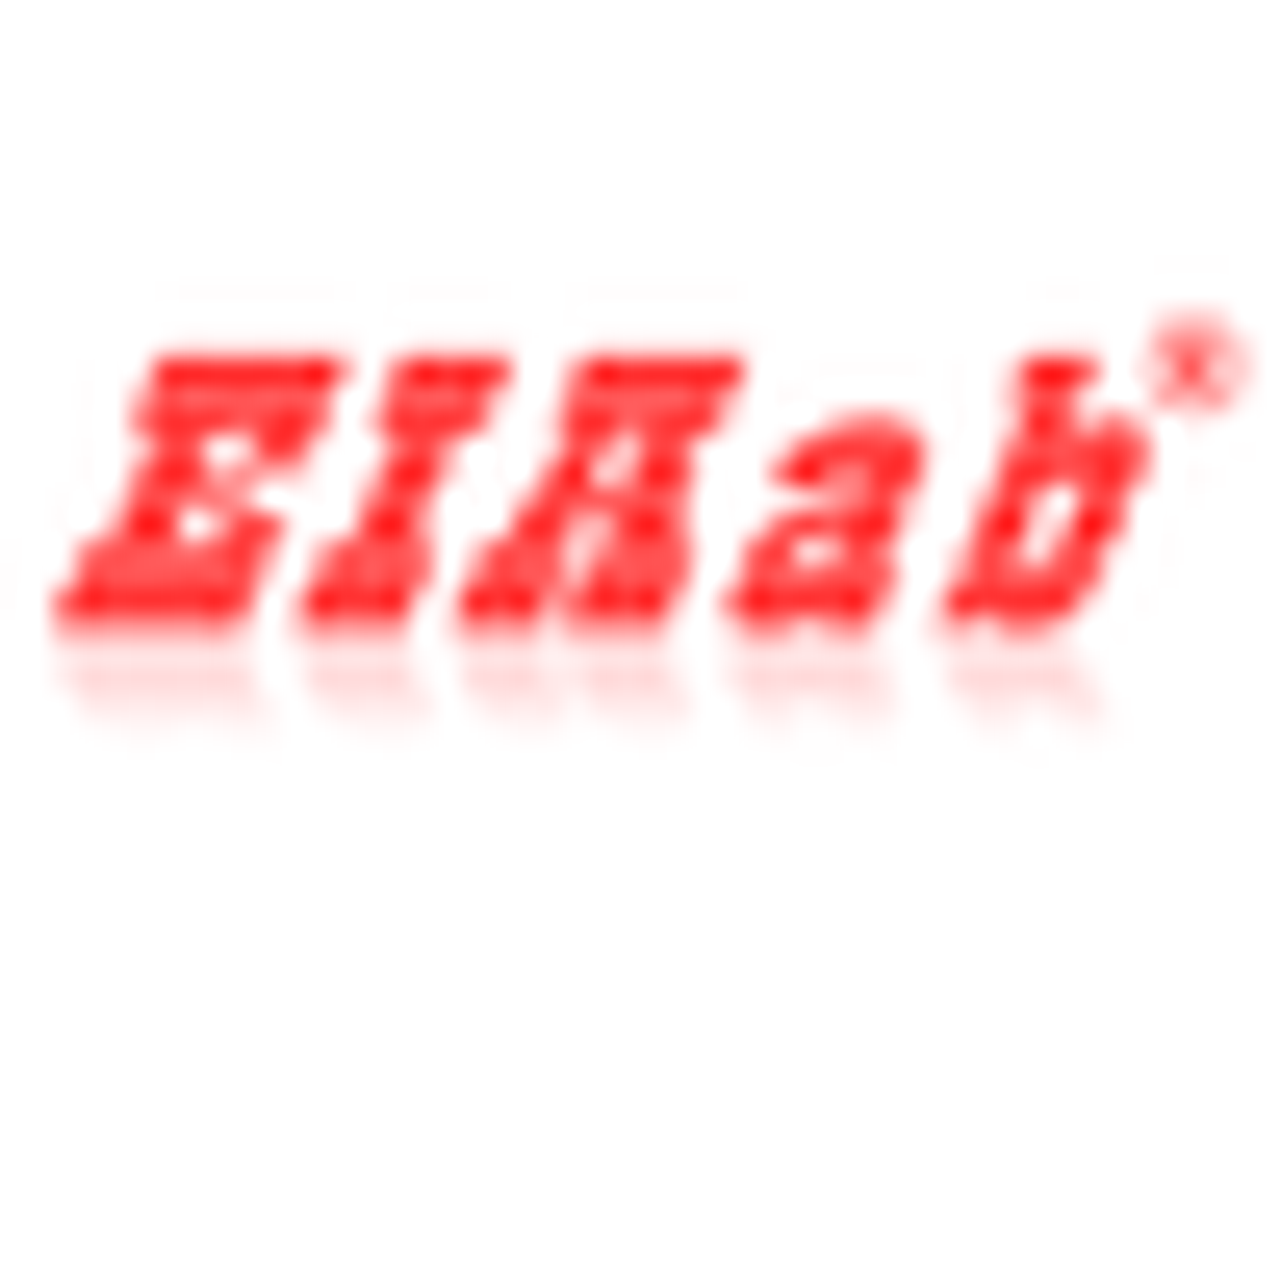 Pig INHBB/Inhibin beta B chain ELISA Kit